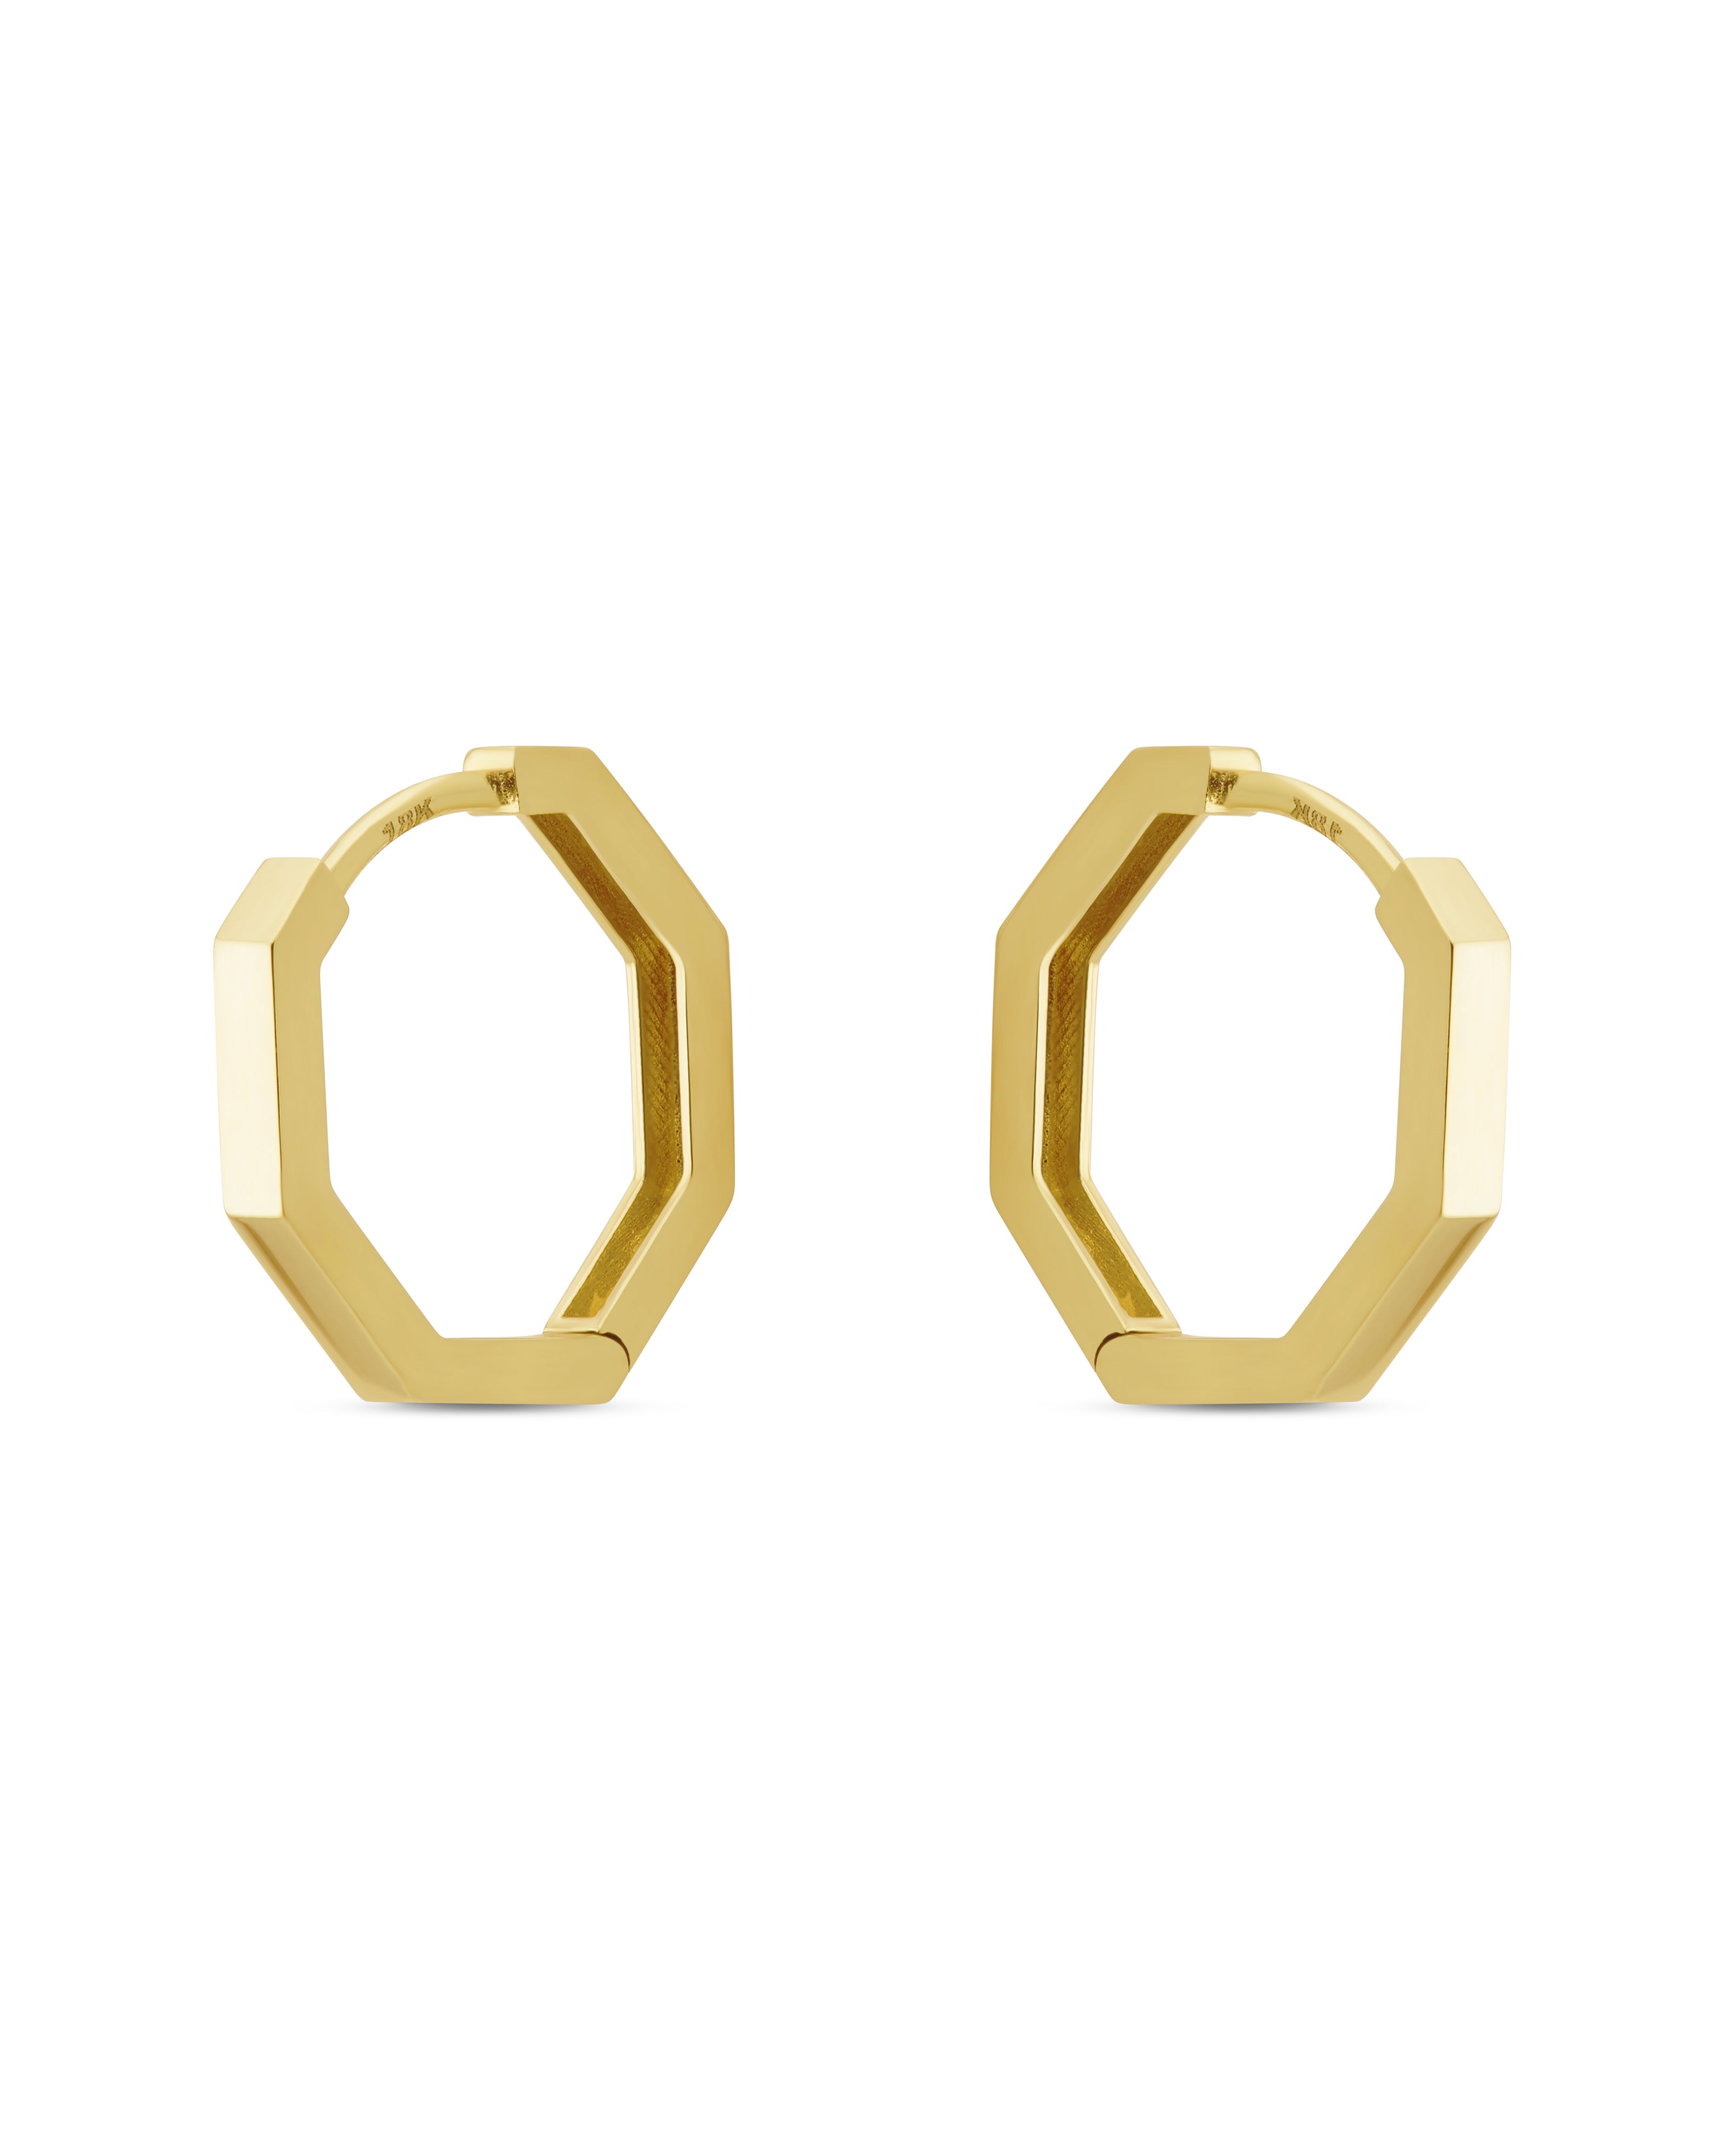 LUNA - Modern Cubic Earrings